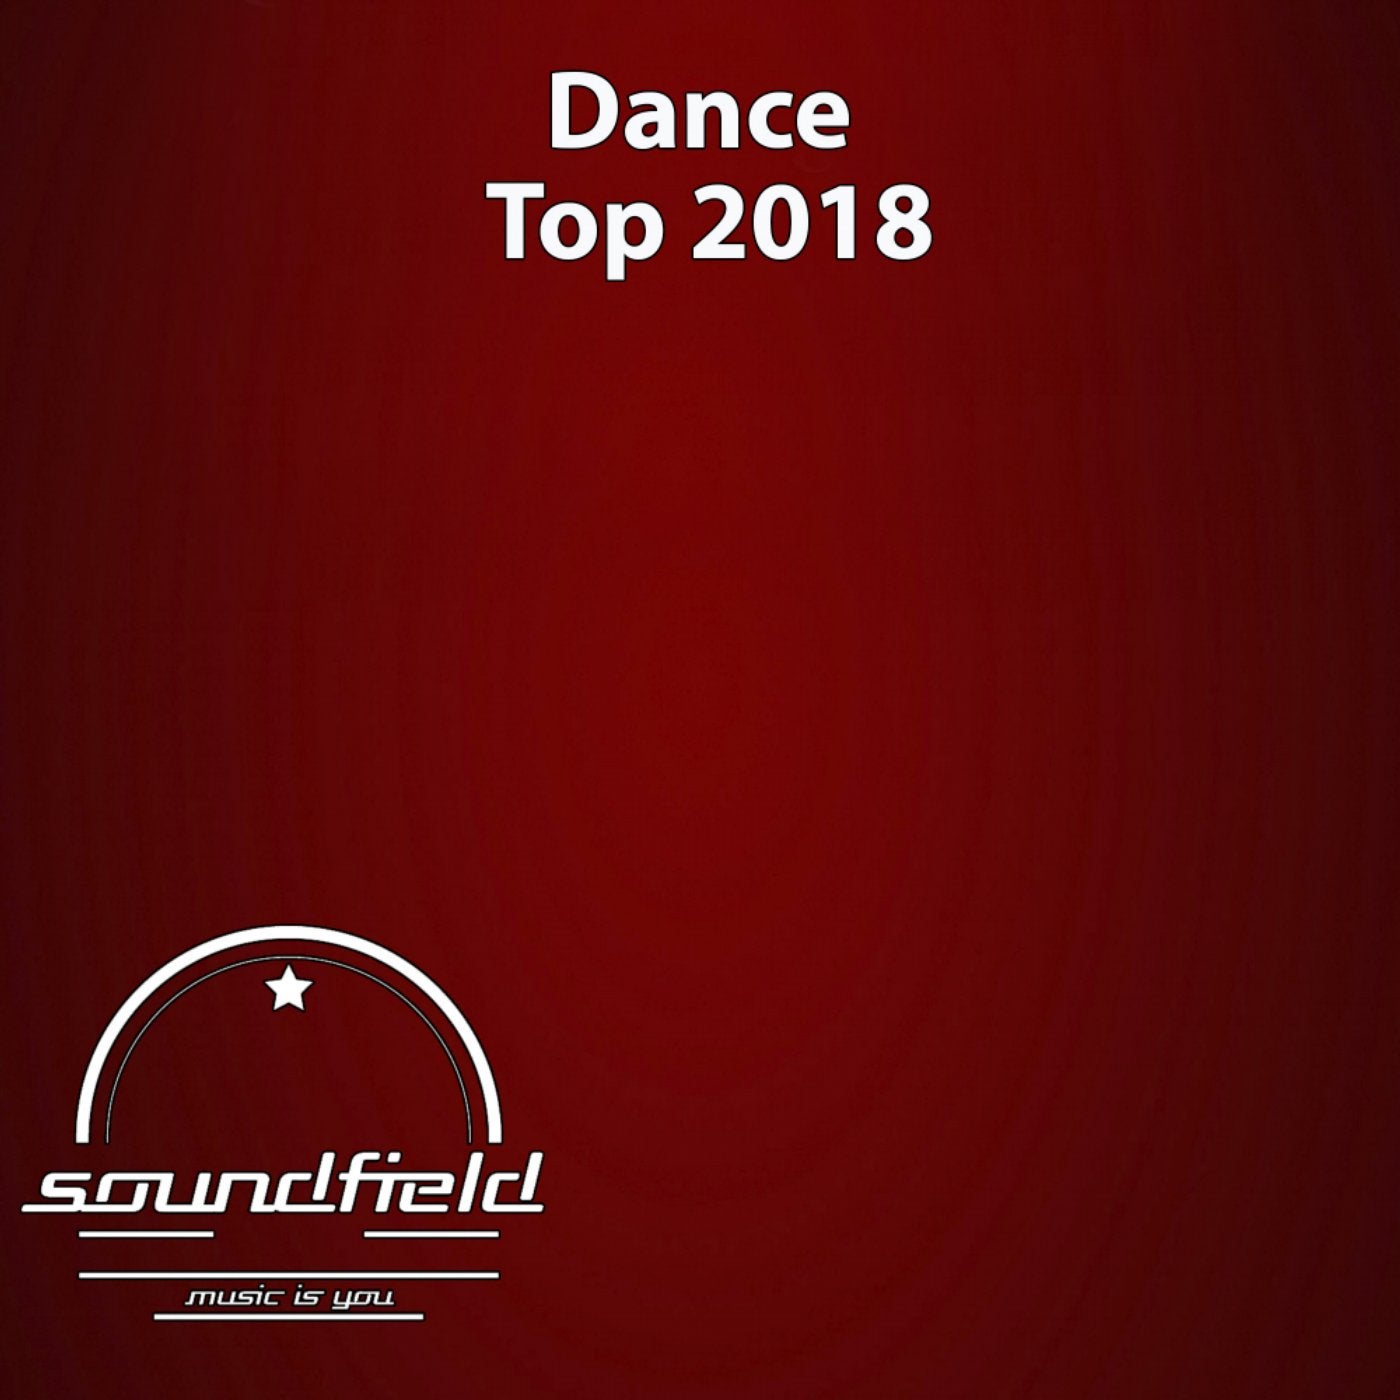 Dance Top 2018